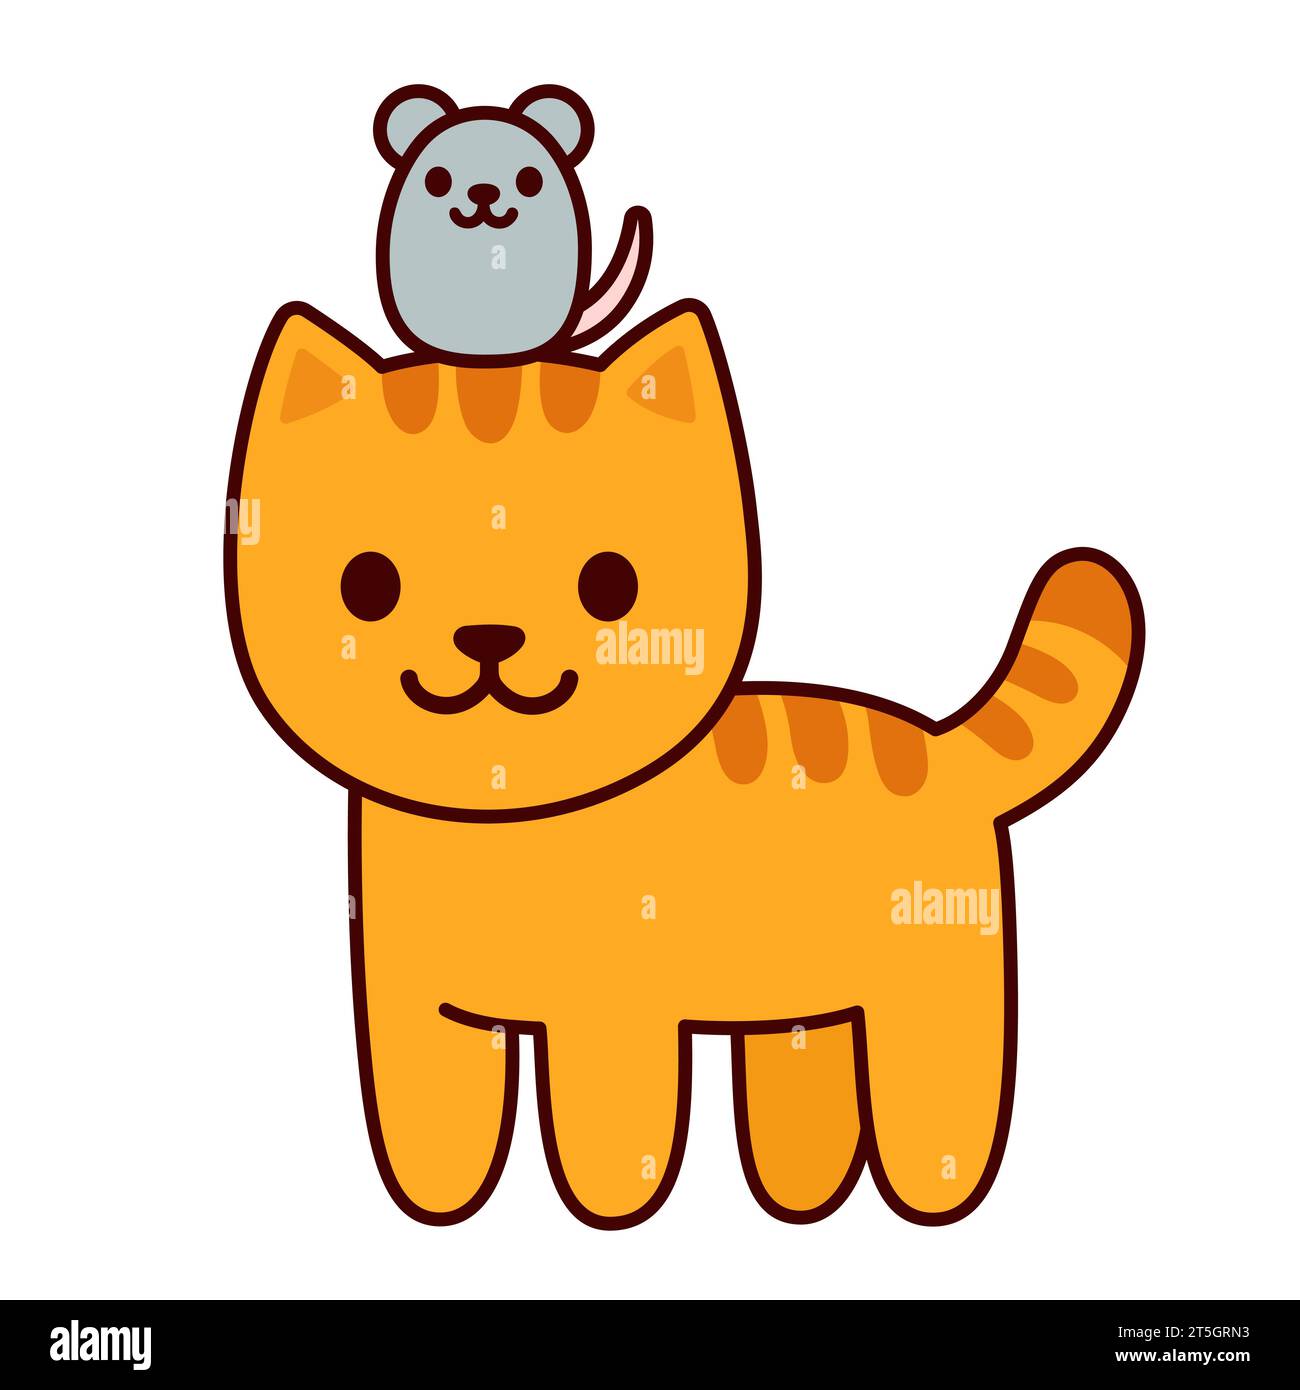 Dessin animé chat et souris Kawaii illustration vectorielle. Chaton au gingembre avec une petite souris, dessin d'amis animaux mignons. Illustration de Vecteur